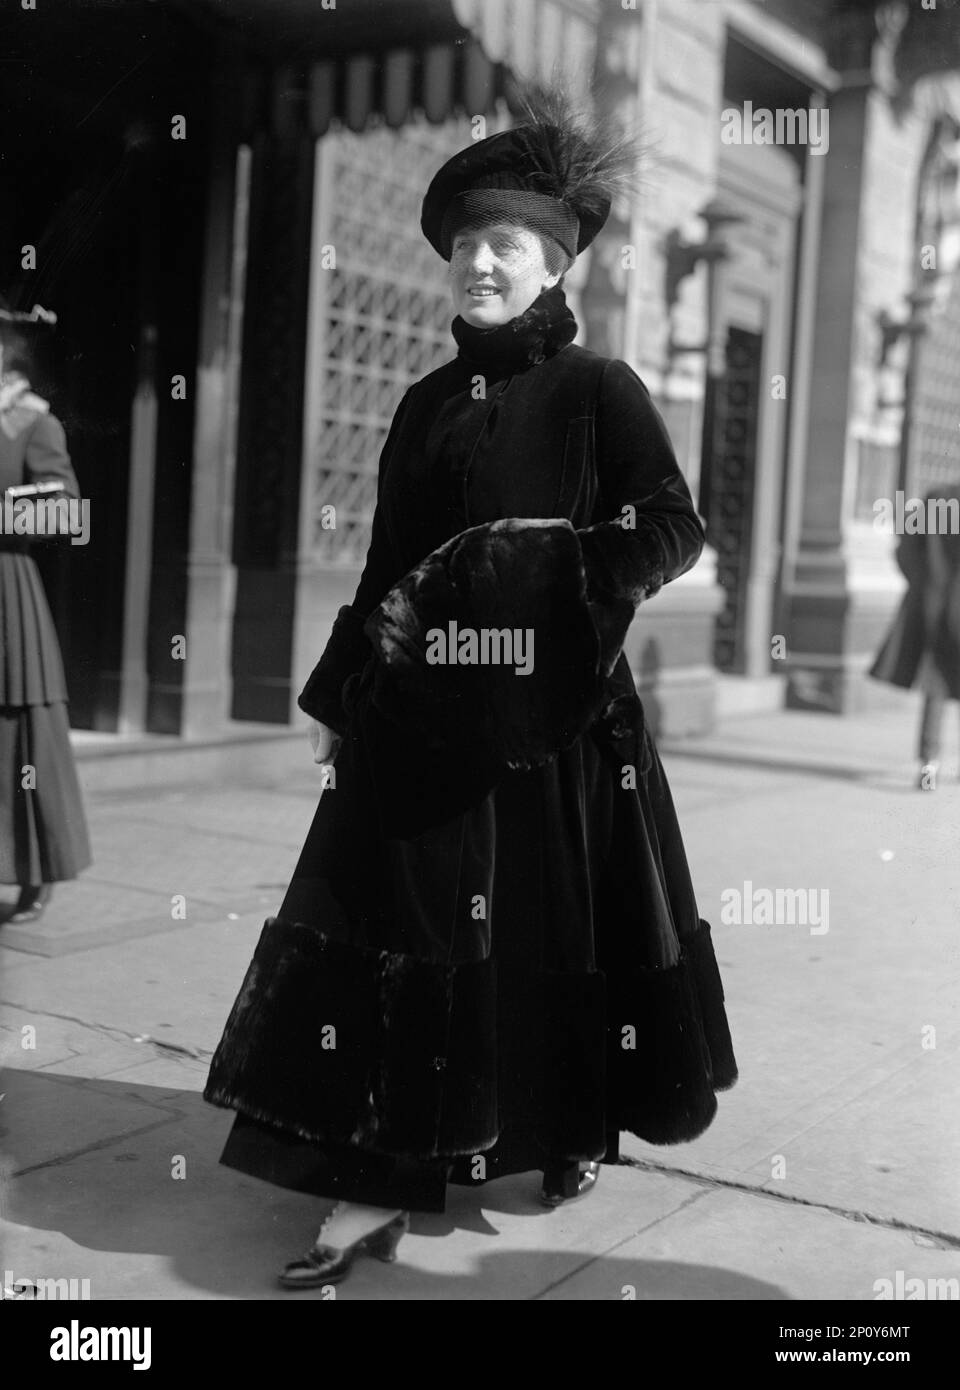 Mary Roberts Rinehart, Mme Stanley M. Rinehart - écrivain de fiction. Aimantation, 1915. Auteur américain, souvent appelé l'américain Agatha Christie. Banque D'Images